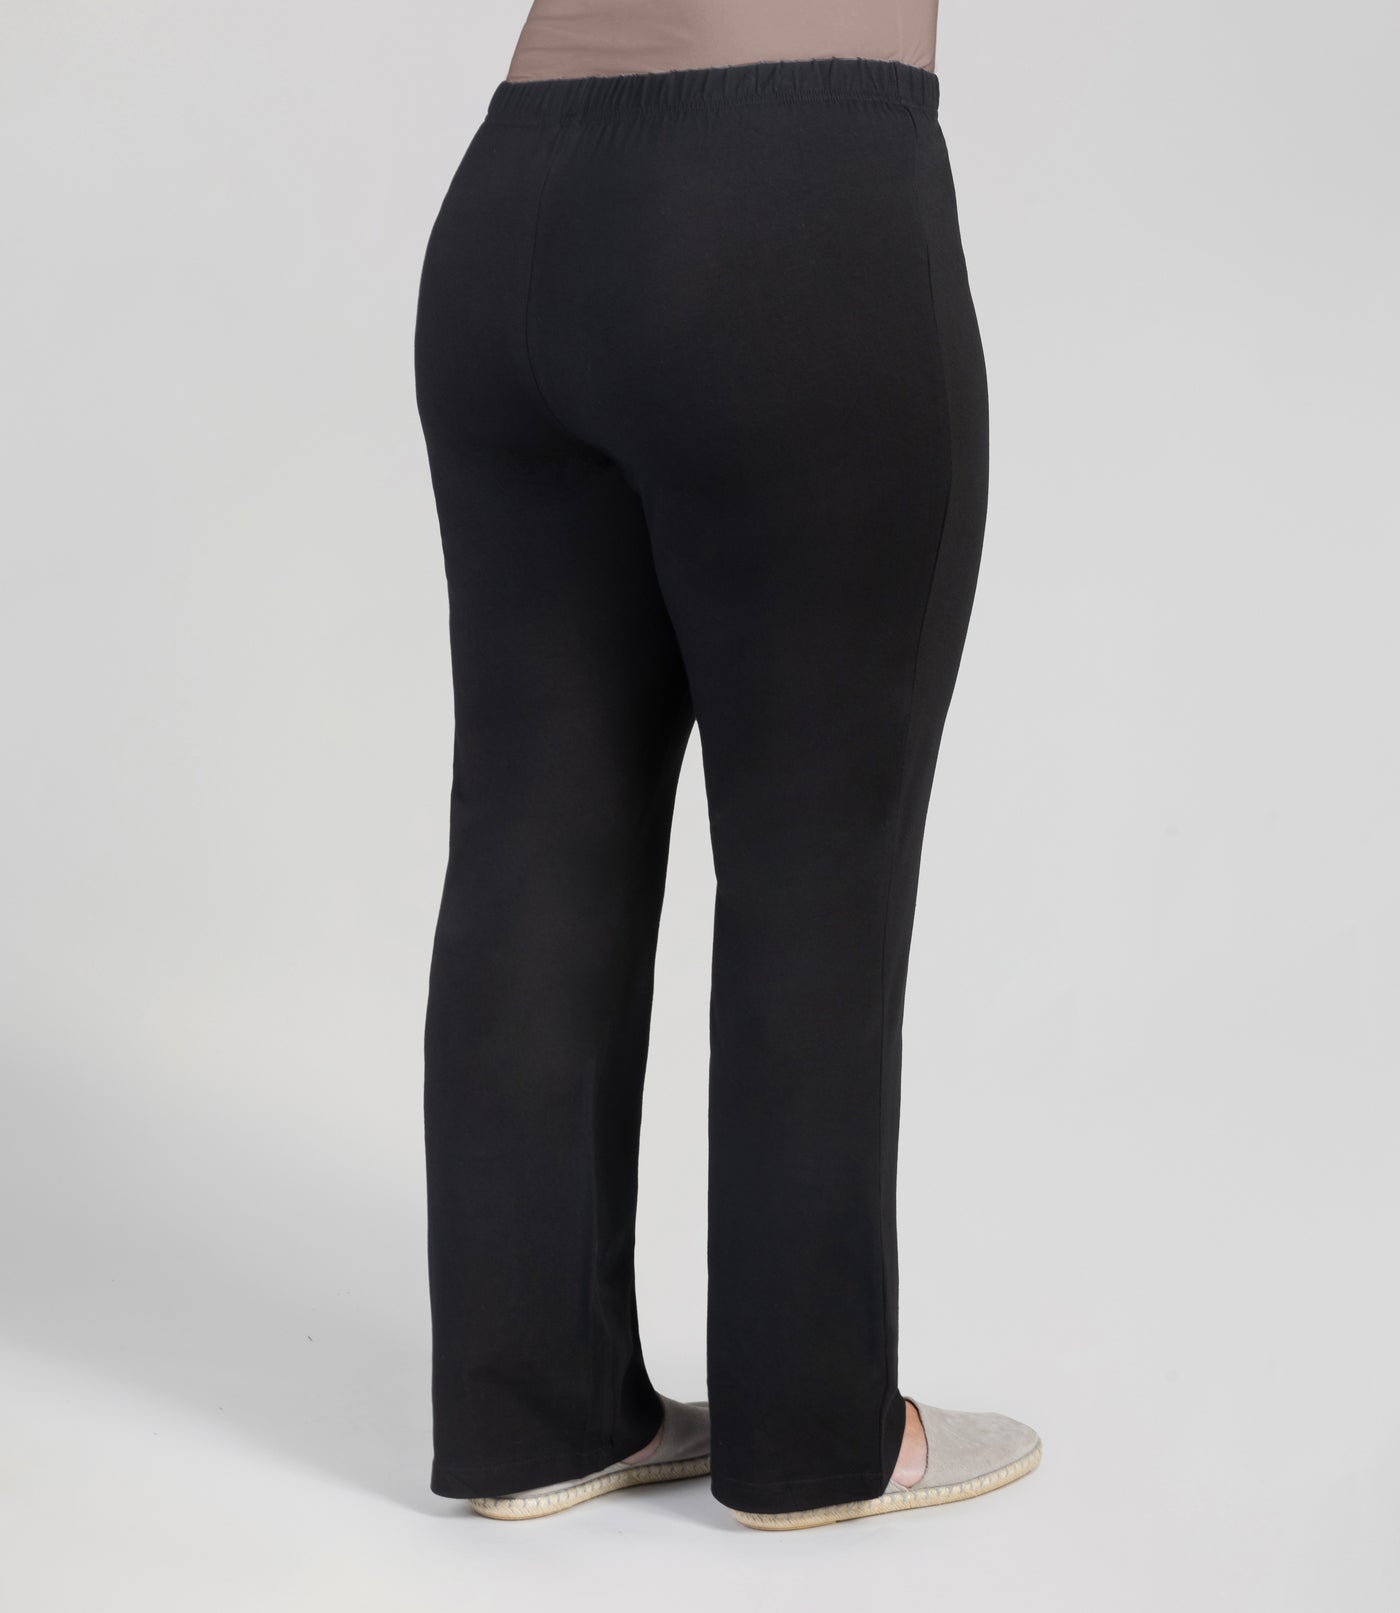 Plus Size two tone Leggings Stretch Pants Yoga Gym Sport 1X 2X 3X